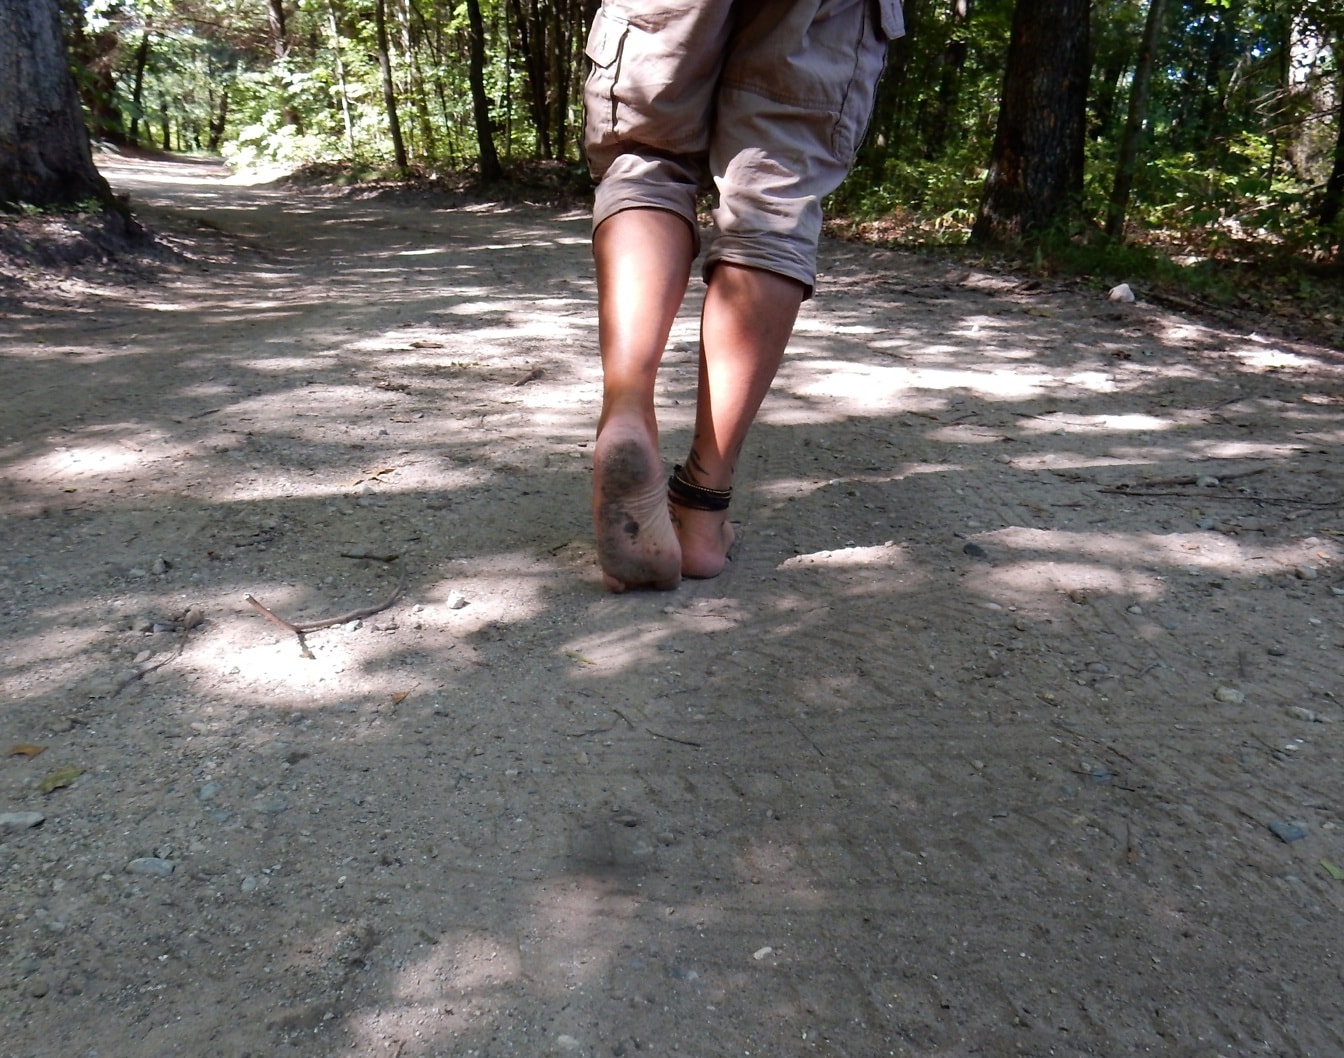 Pria Berjalan tanpa alas kaki di jalan hutan yang kotor